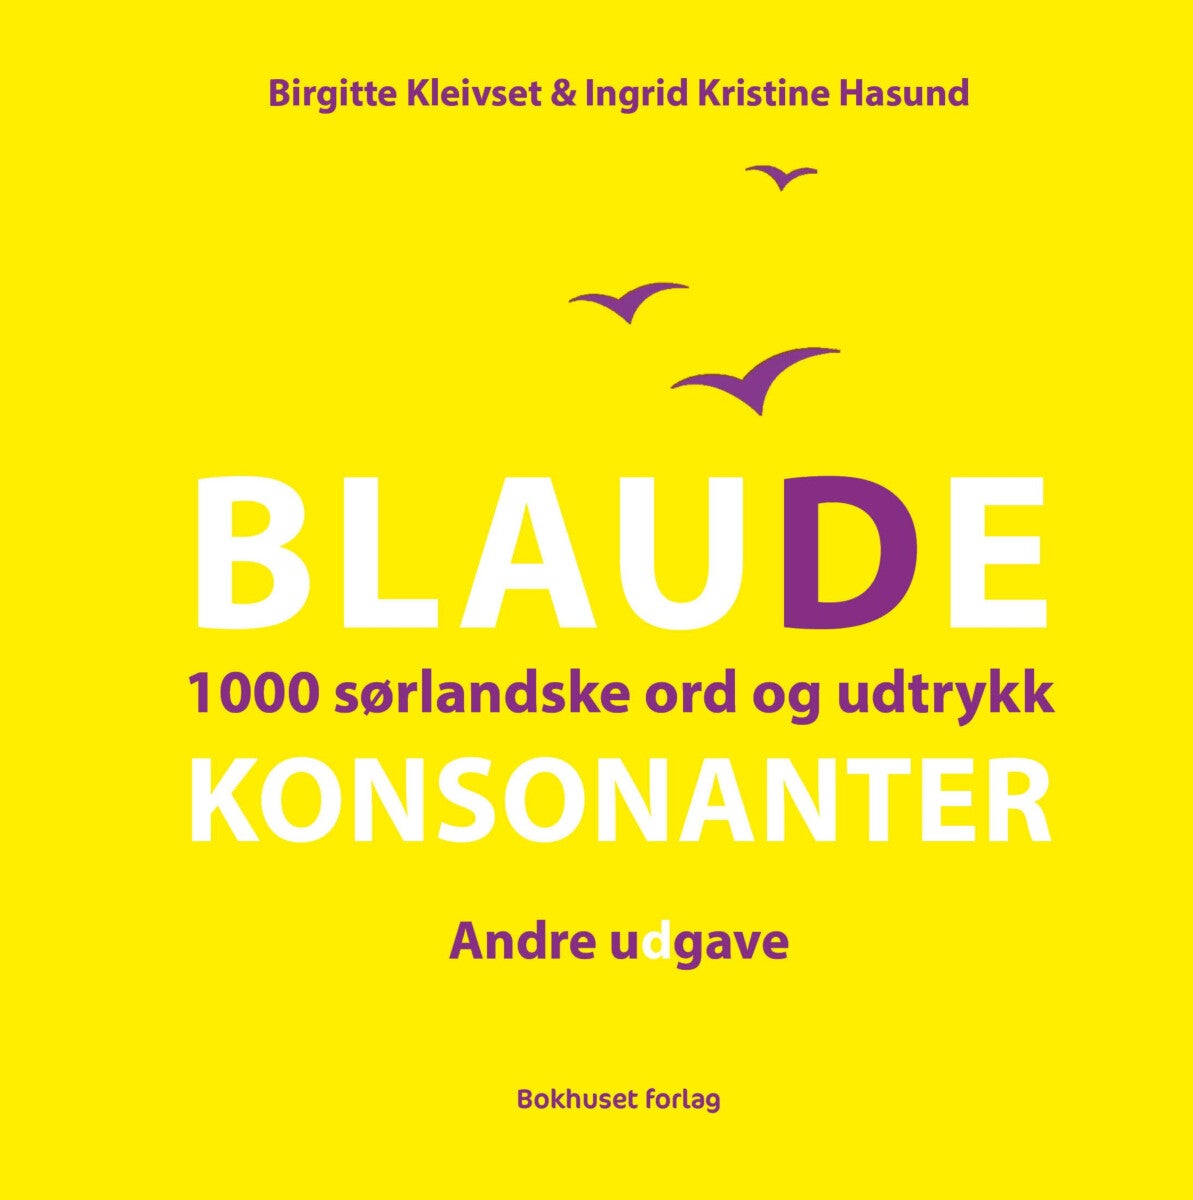 Blaude konsonanter av Ingrid Kristine Hasund, Birgitte Kleivset